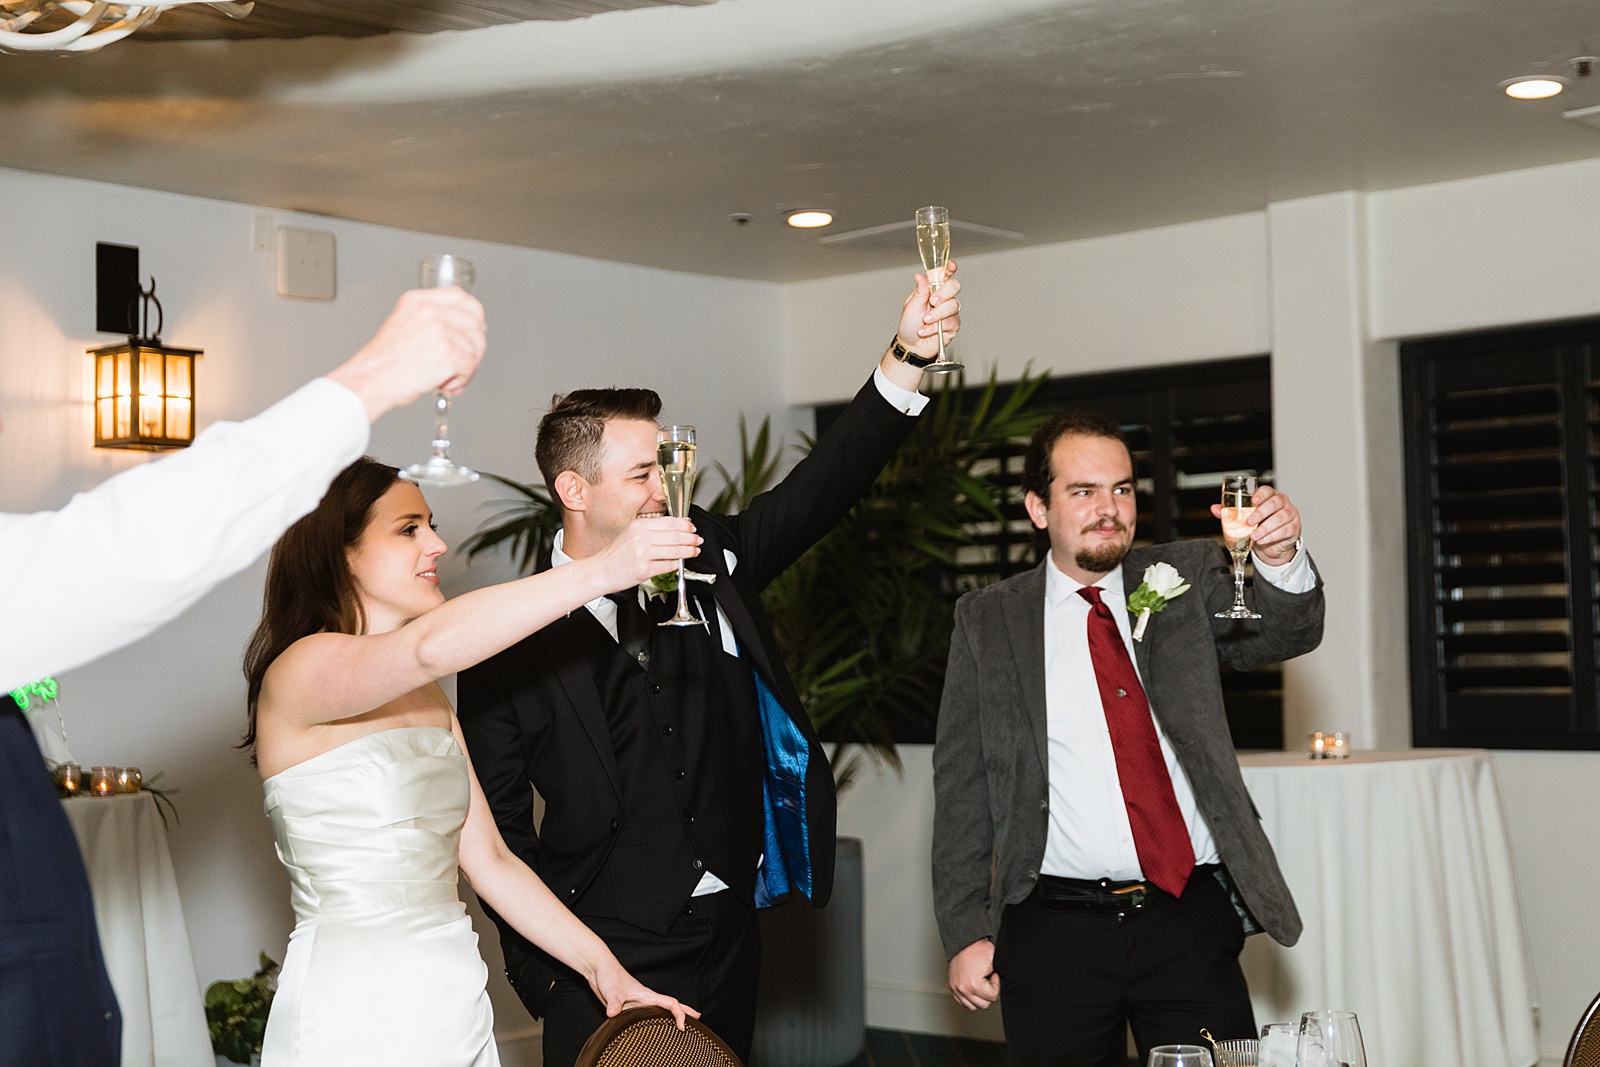 Toasts at The Scott wedding reception by Scottsdale wedding photographer PMA Photography.